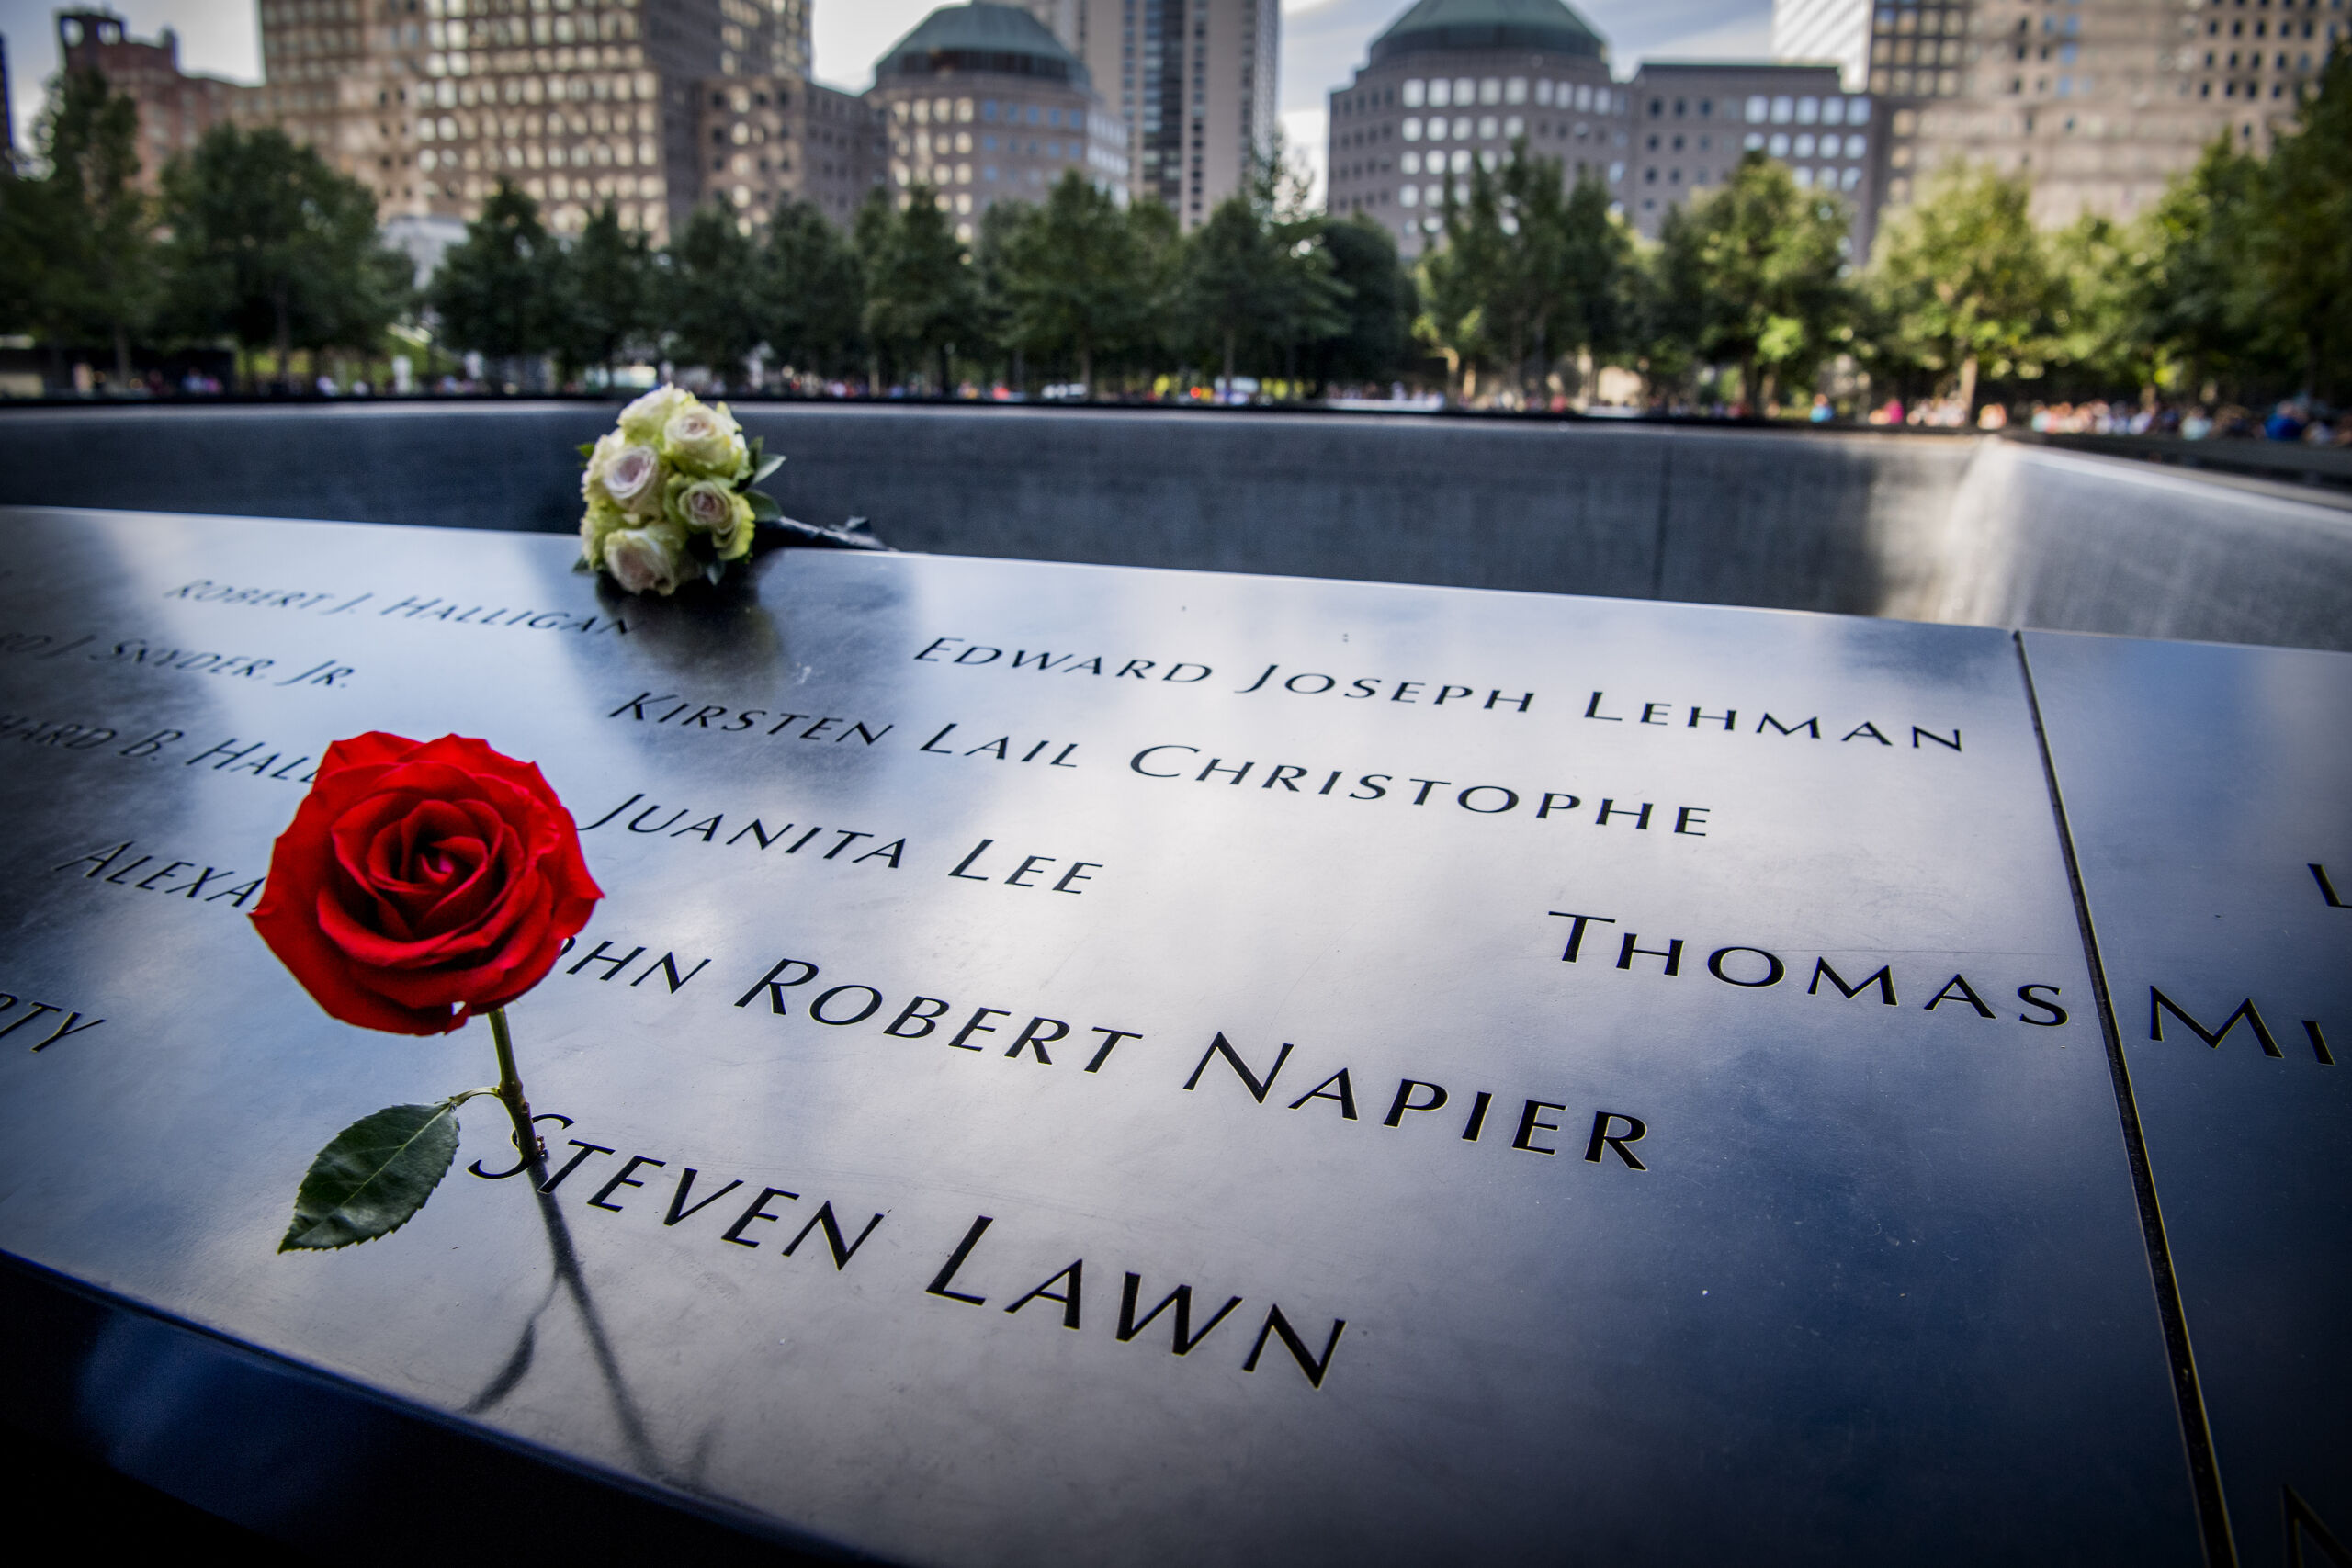 De herdenkingsmonument voor 9/11 op de plek waar de Twin Towers stonden.